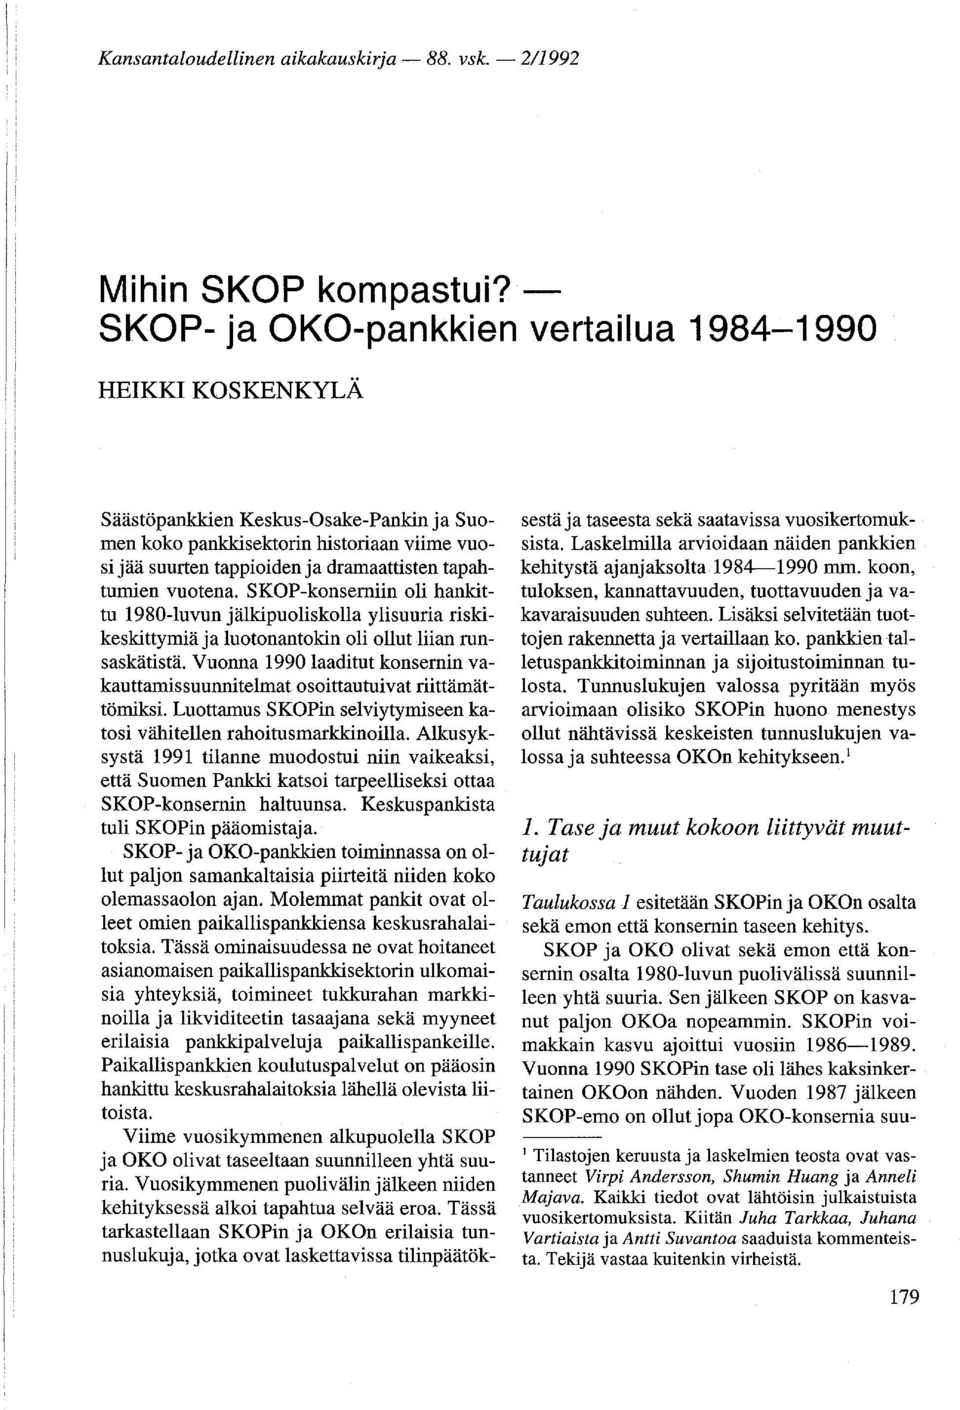 tapahtumien vuotena. SKOP-konserniin oli hankittu 1980-luvun jälkipuoliskolla yli suuria riskikeskittymiä ja luotonantokin oli ollut liian runsaskätistä.